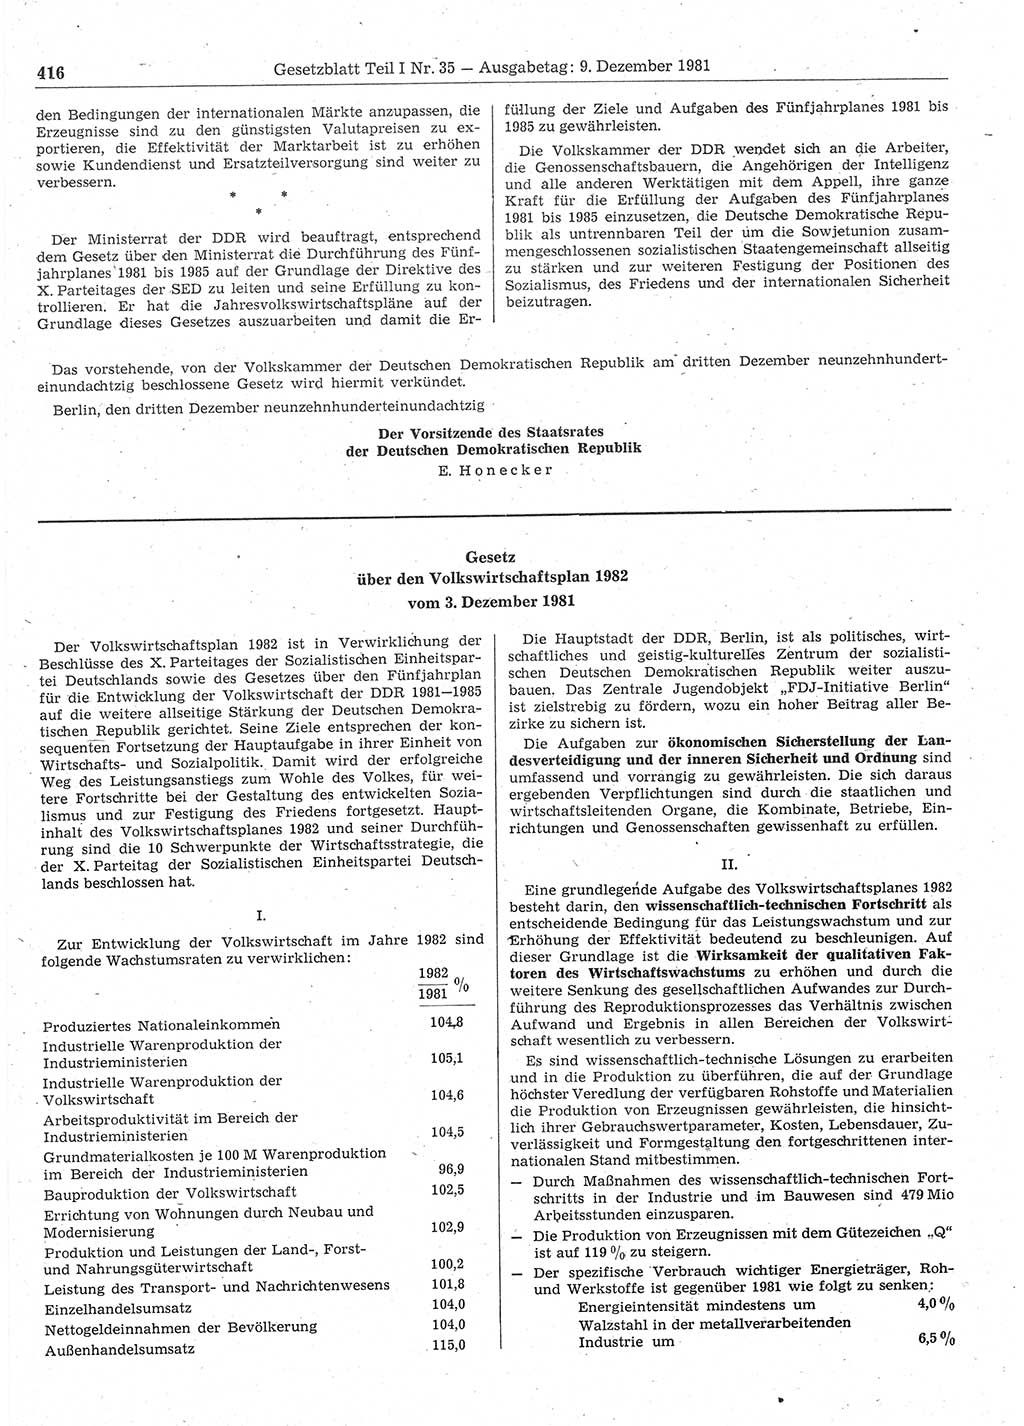 Gesetzblatt (GBl.) der Deutschen Demokratischen Republik (DDR) Teil Ⅰ 1981, Seite 416 (GBl. DDR Ⅰ 1981, S. 416)